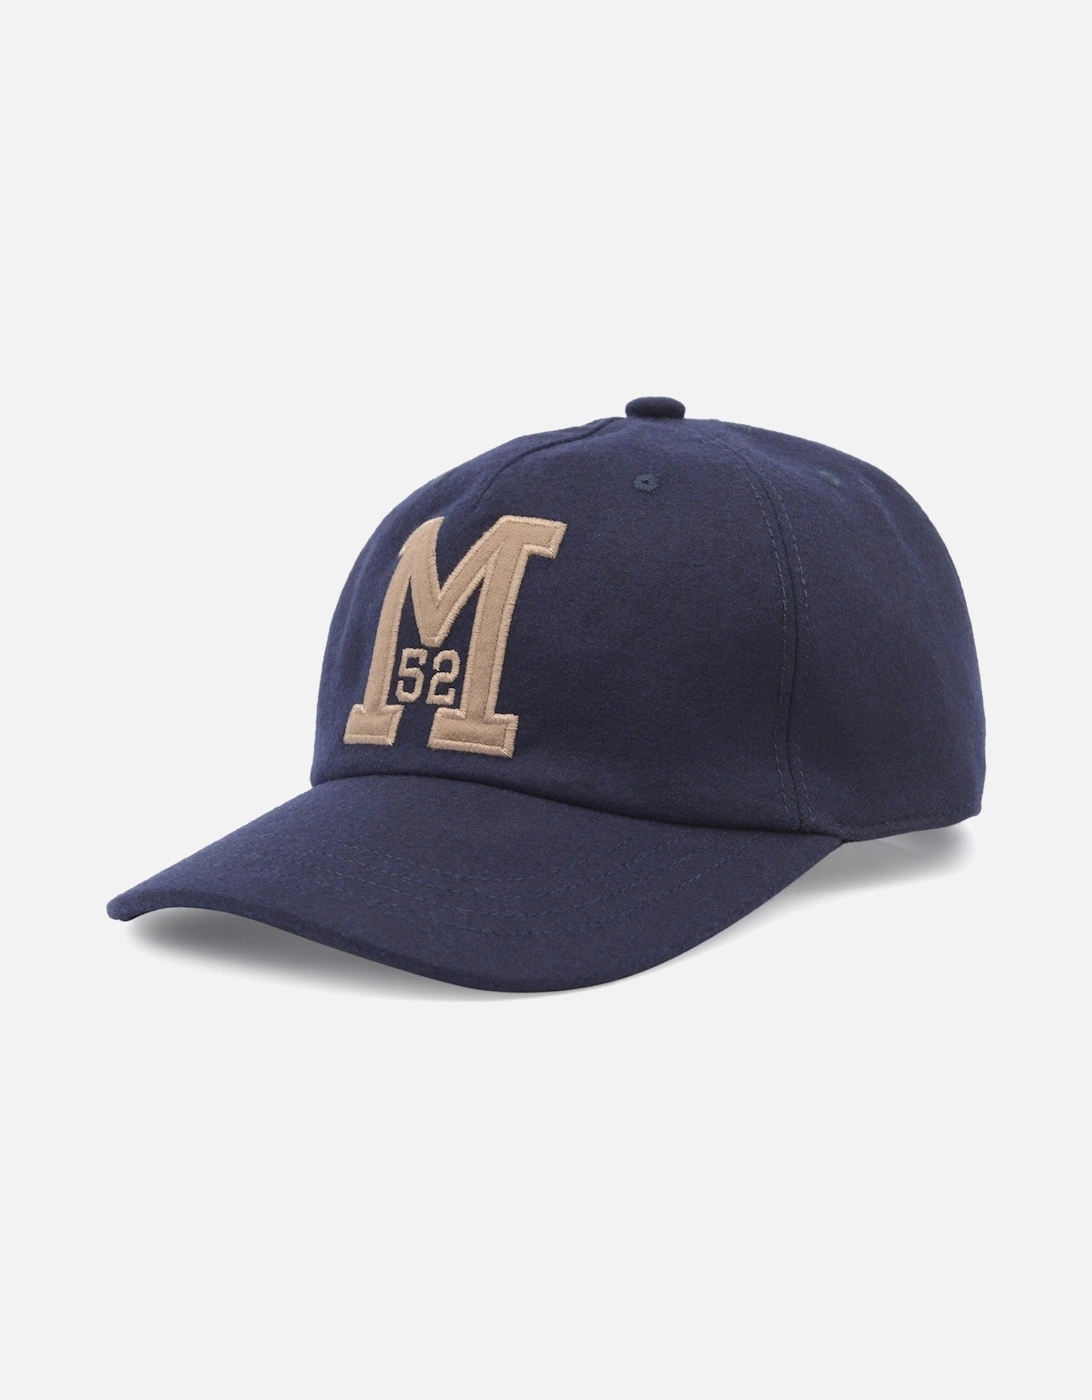 M Baseball Cap